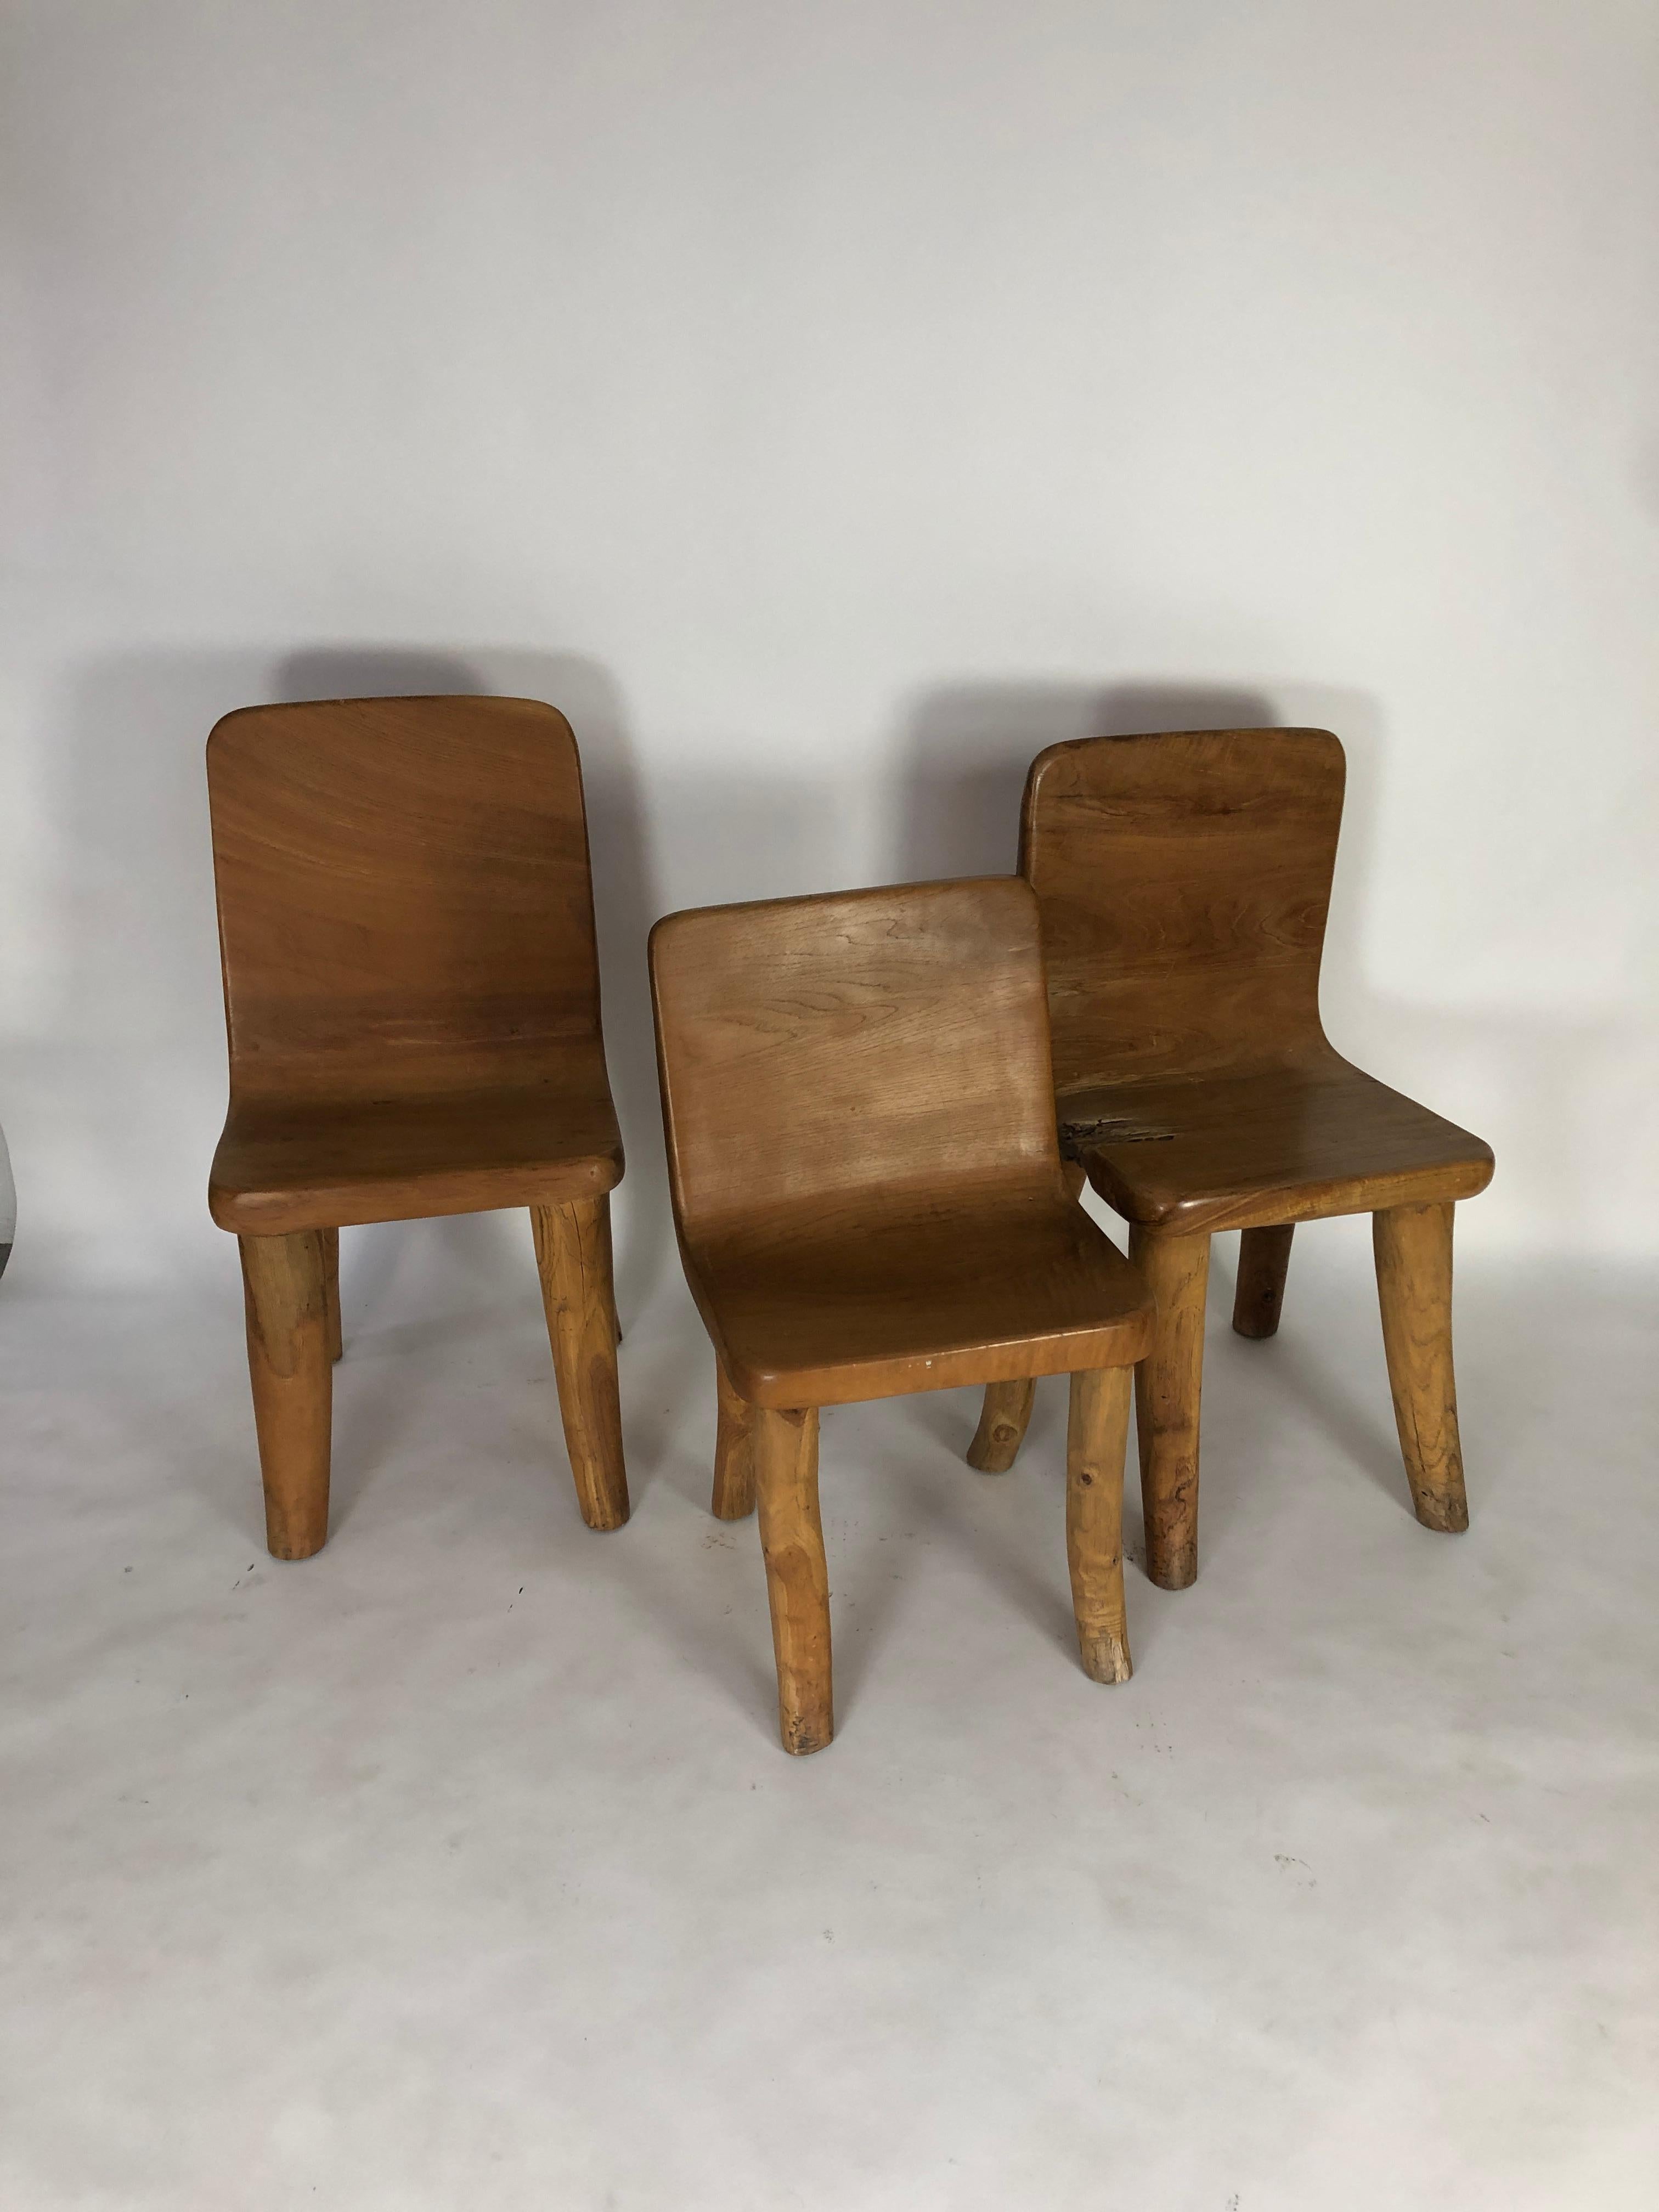 Unique Carved Teak Chair #2 3